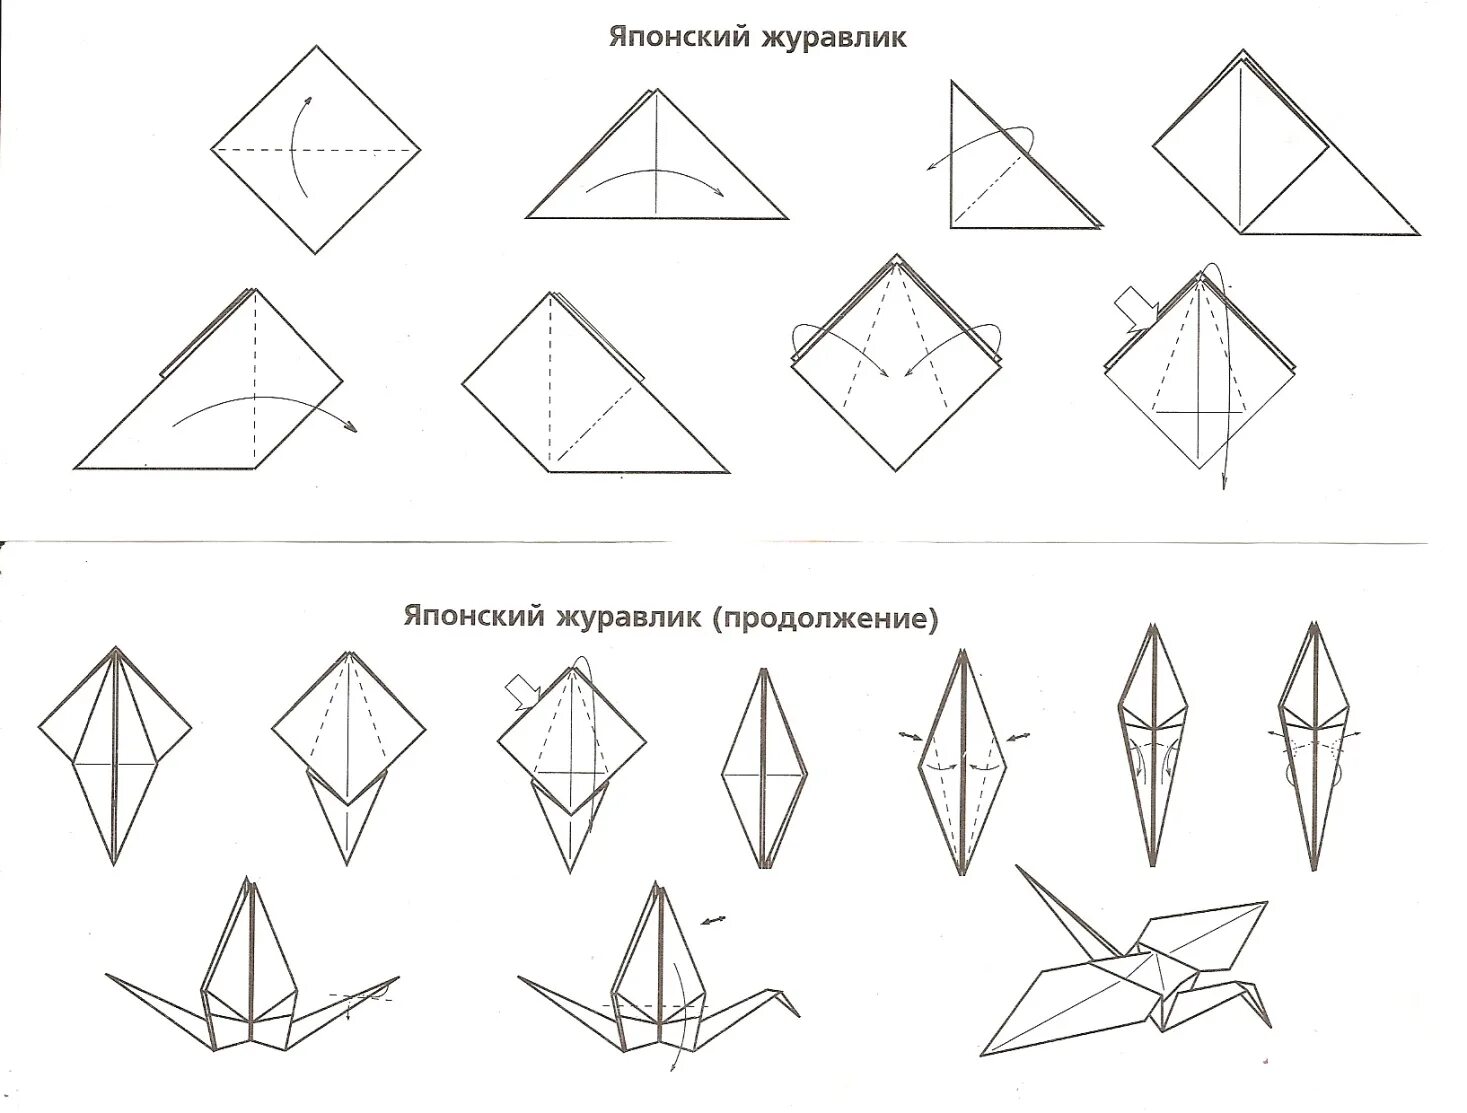 Оригами журавлики поэтапно. Оригами из бумаги для начинающих Журавлик. Оригами из бумаги Журавлик схема для начинающих. Оригами Журавлик из бумаги пошаговой инструкции. Оригами Журавлик схема для детей.